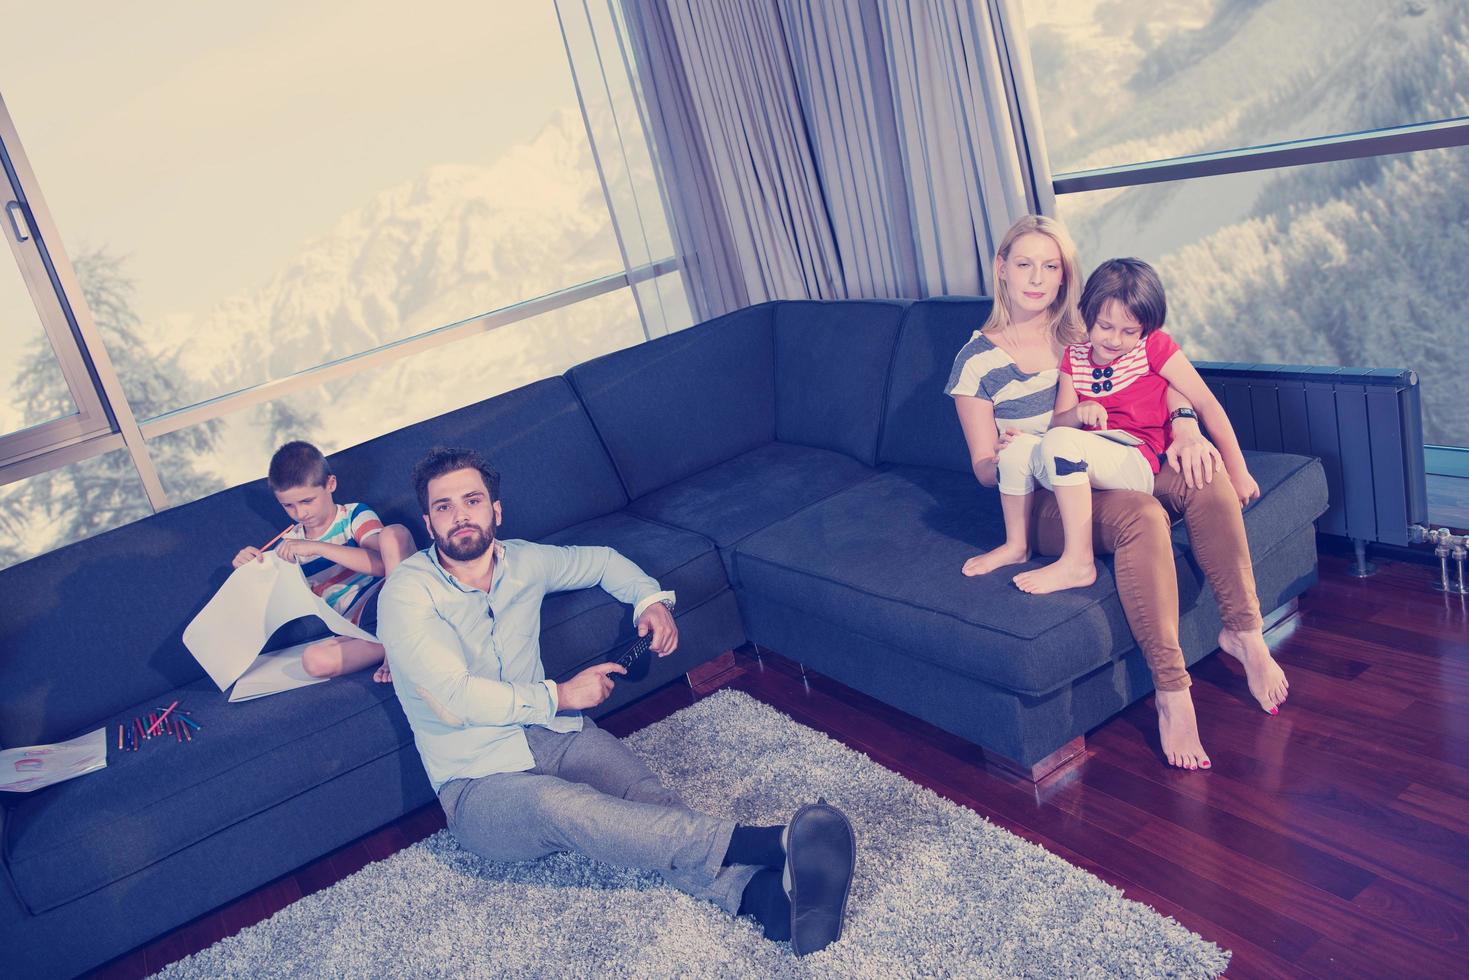 familia joven feliz jugando juntos en el sofá foto